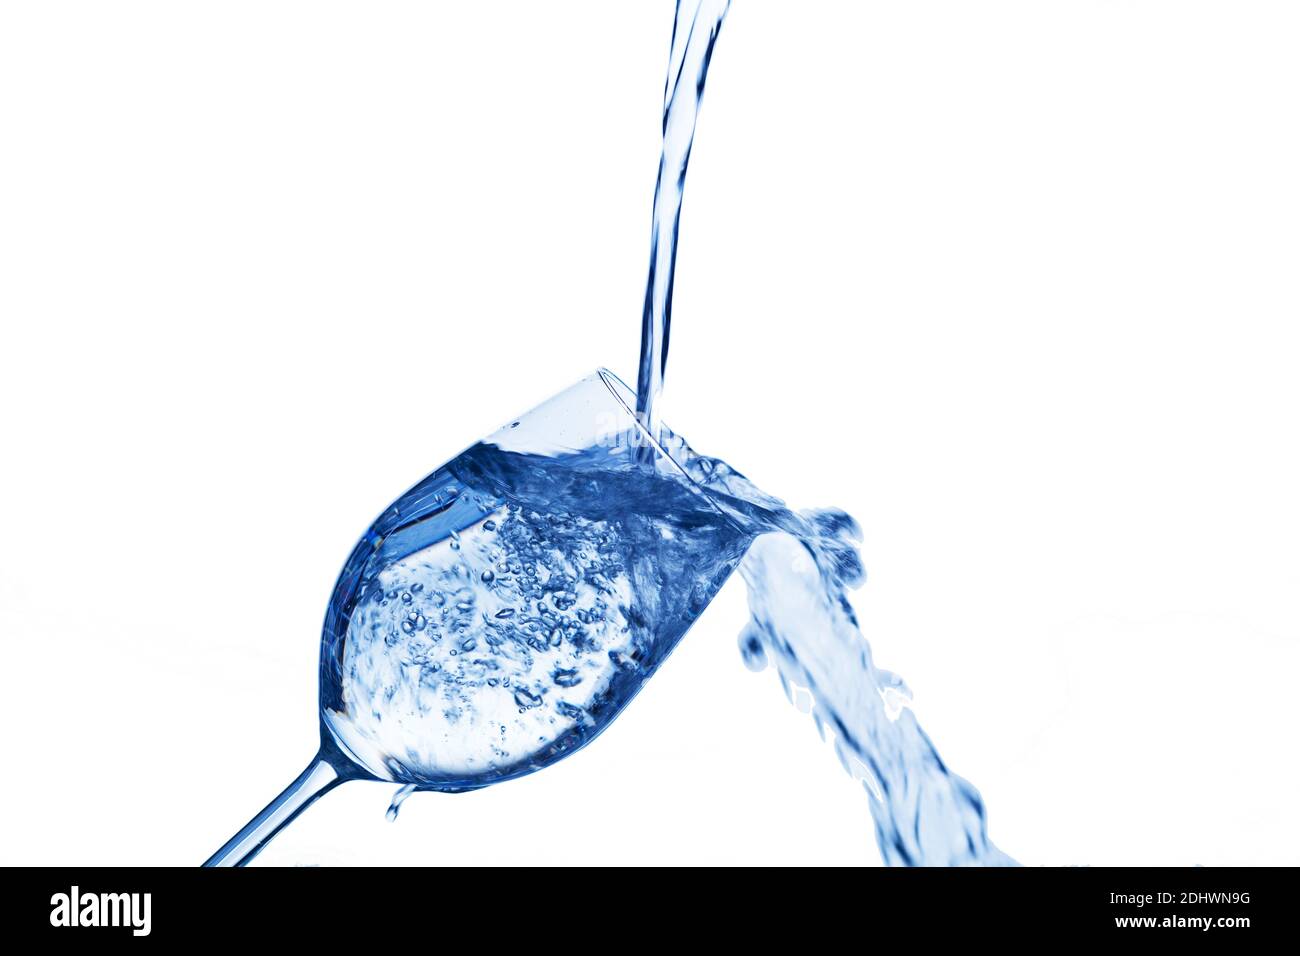 Reines und sauberes Wasser wird in ein Glas eingefüült. Trinkwasser, Wasserglas, Glas, Dehydratation, dehydrieren, Dehydrierung, Wasserglas, Mineralwa Stock Photo